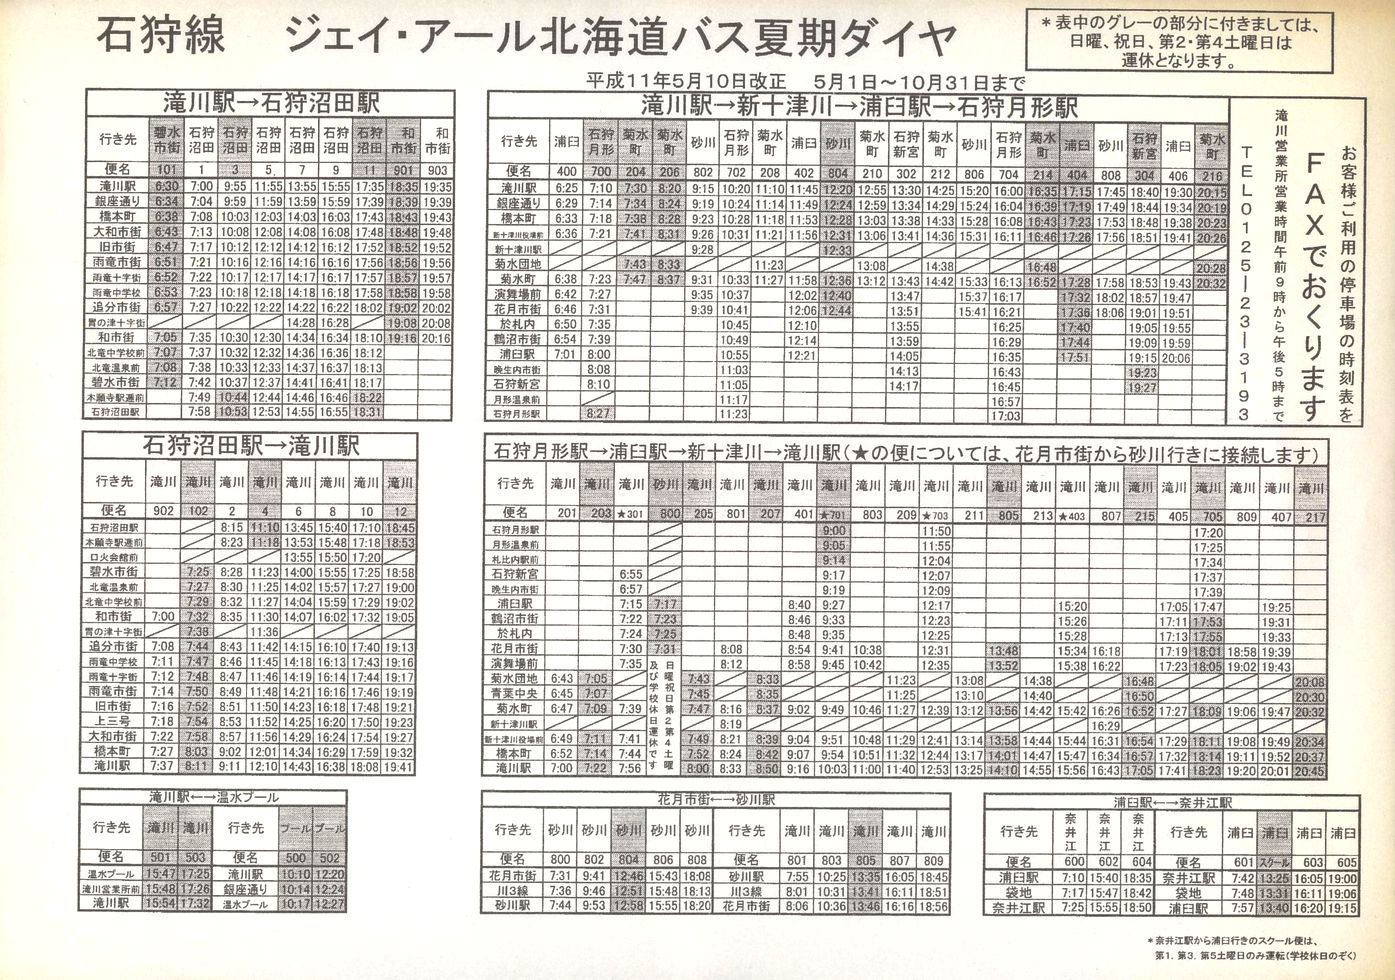 1999-05-10改正_ＪＲ北海道バス_石狩線時刻表